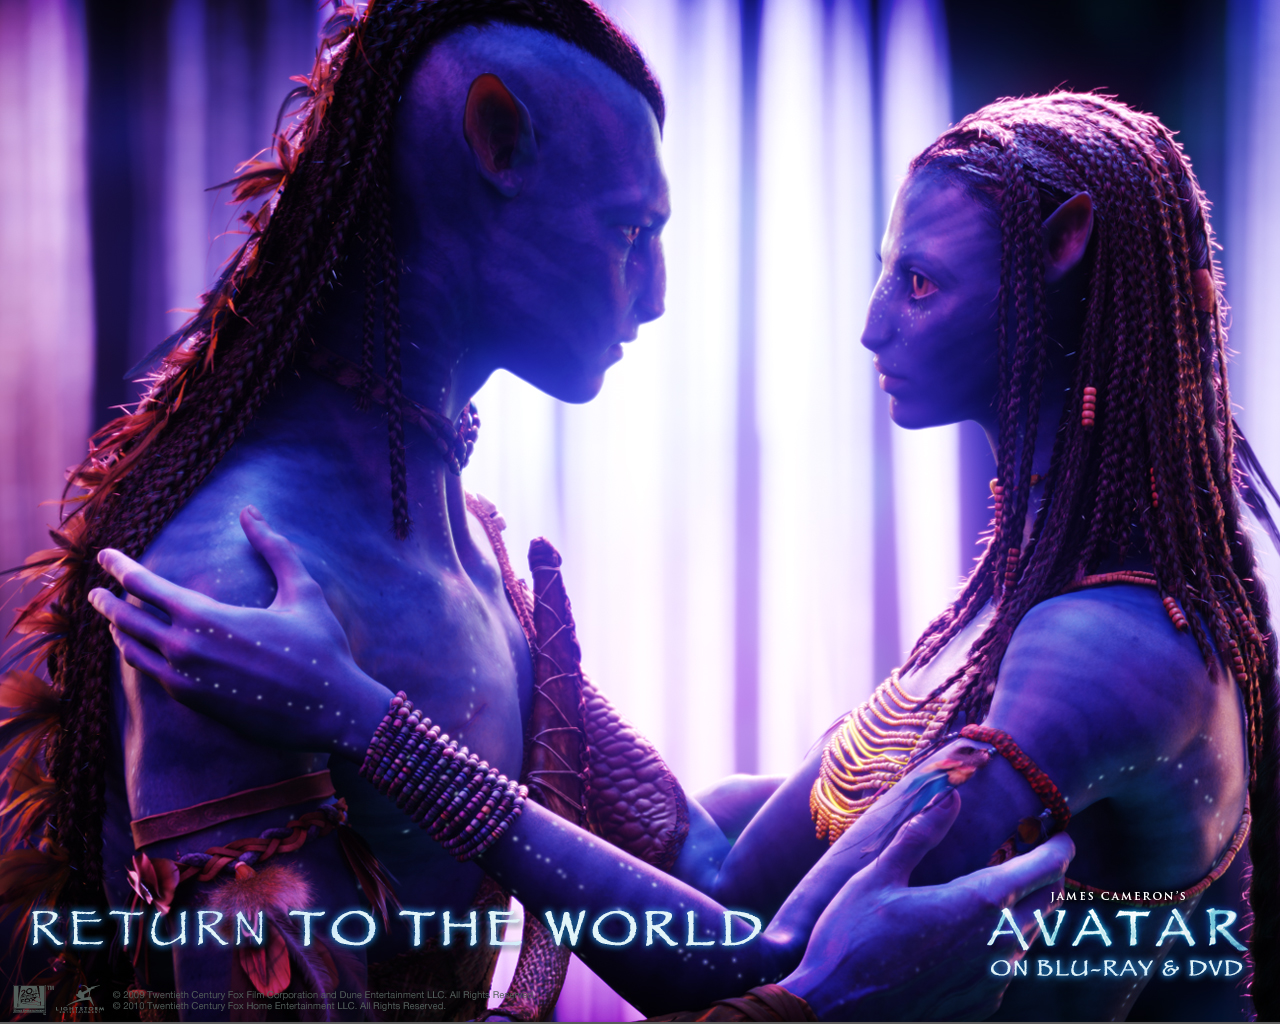 Descarga gratuita de fondo de pantalla para móvil de Avatar, Películas, Jake Sully, Neytiri (Avatar).